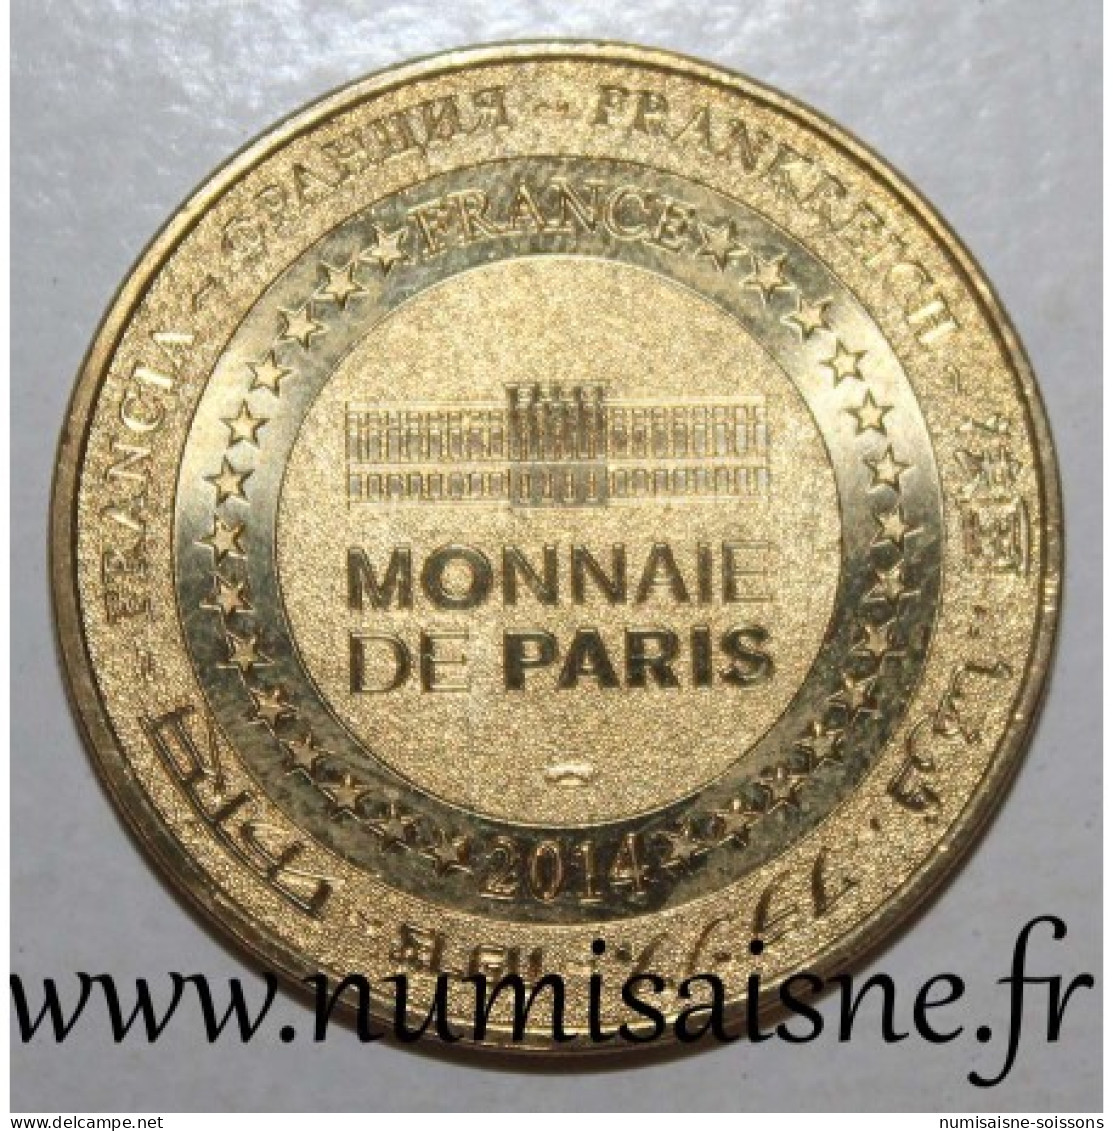 77 - MARNE LA VALLÉE - DISNEYLAND - Minnie - Monnaie De Paris - 2014 - 2014